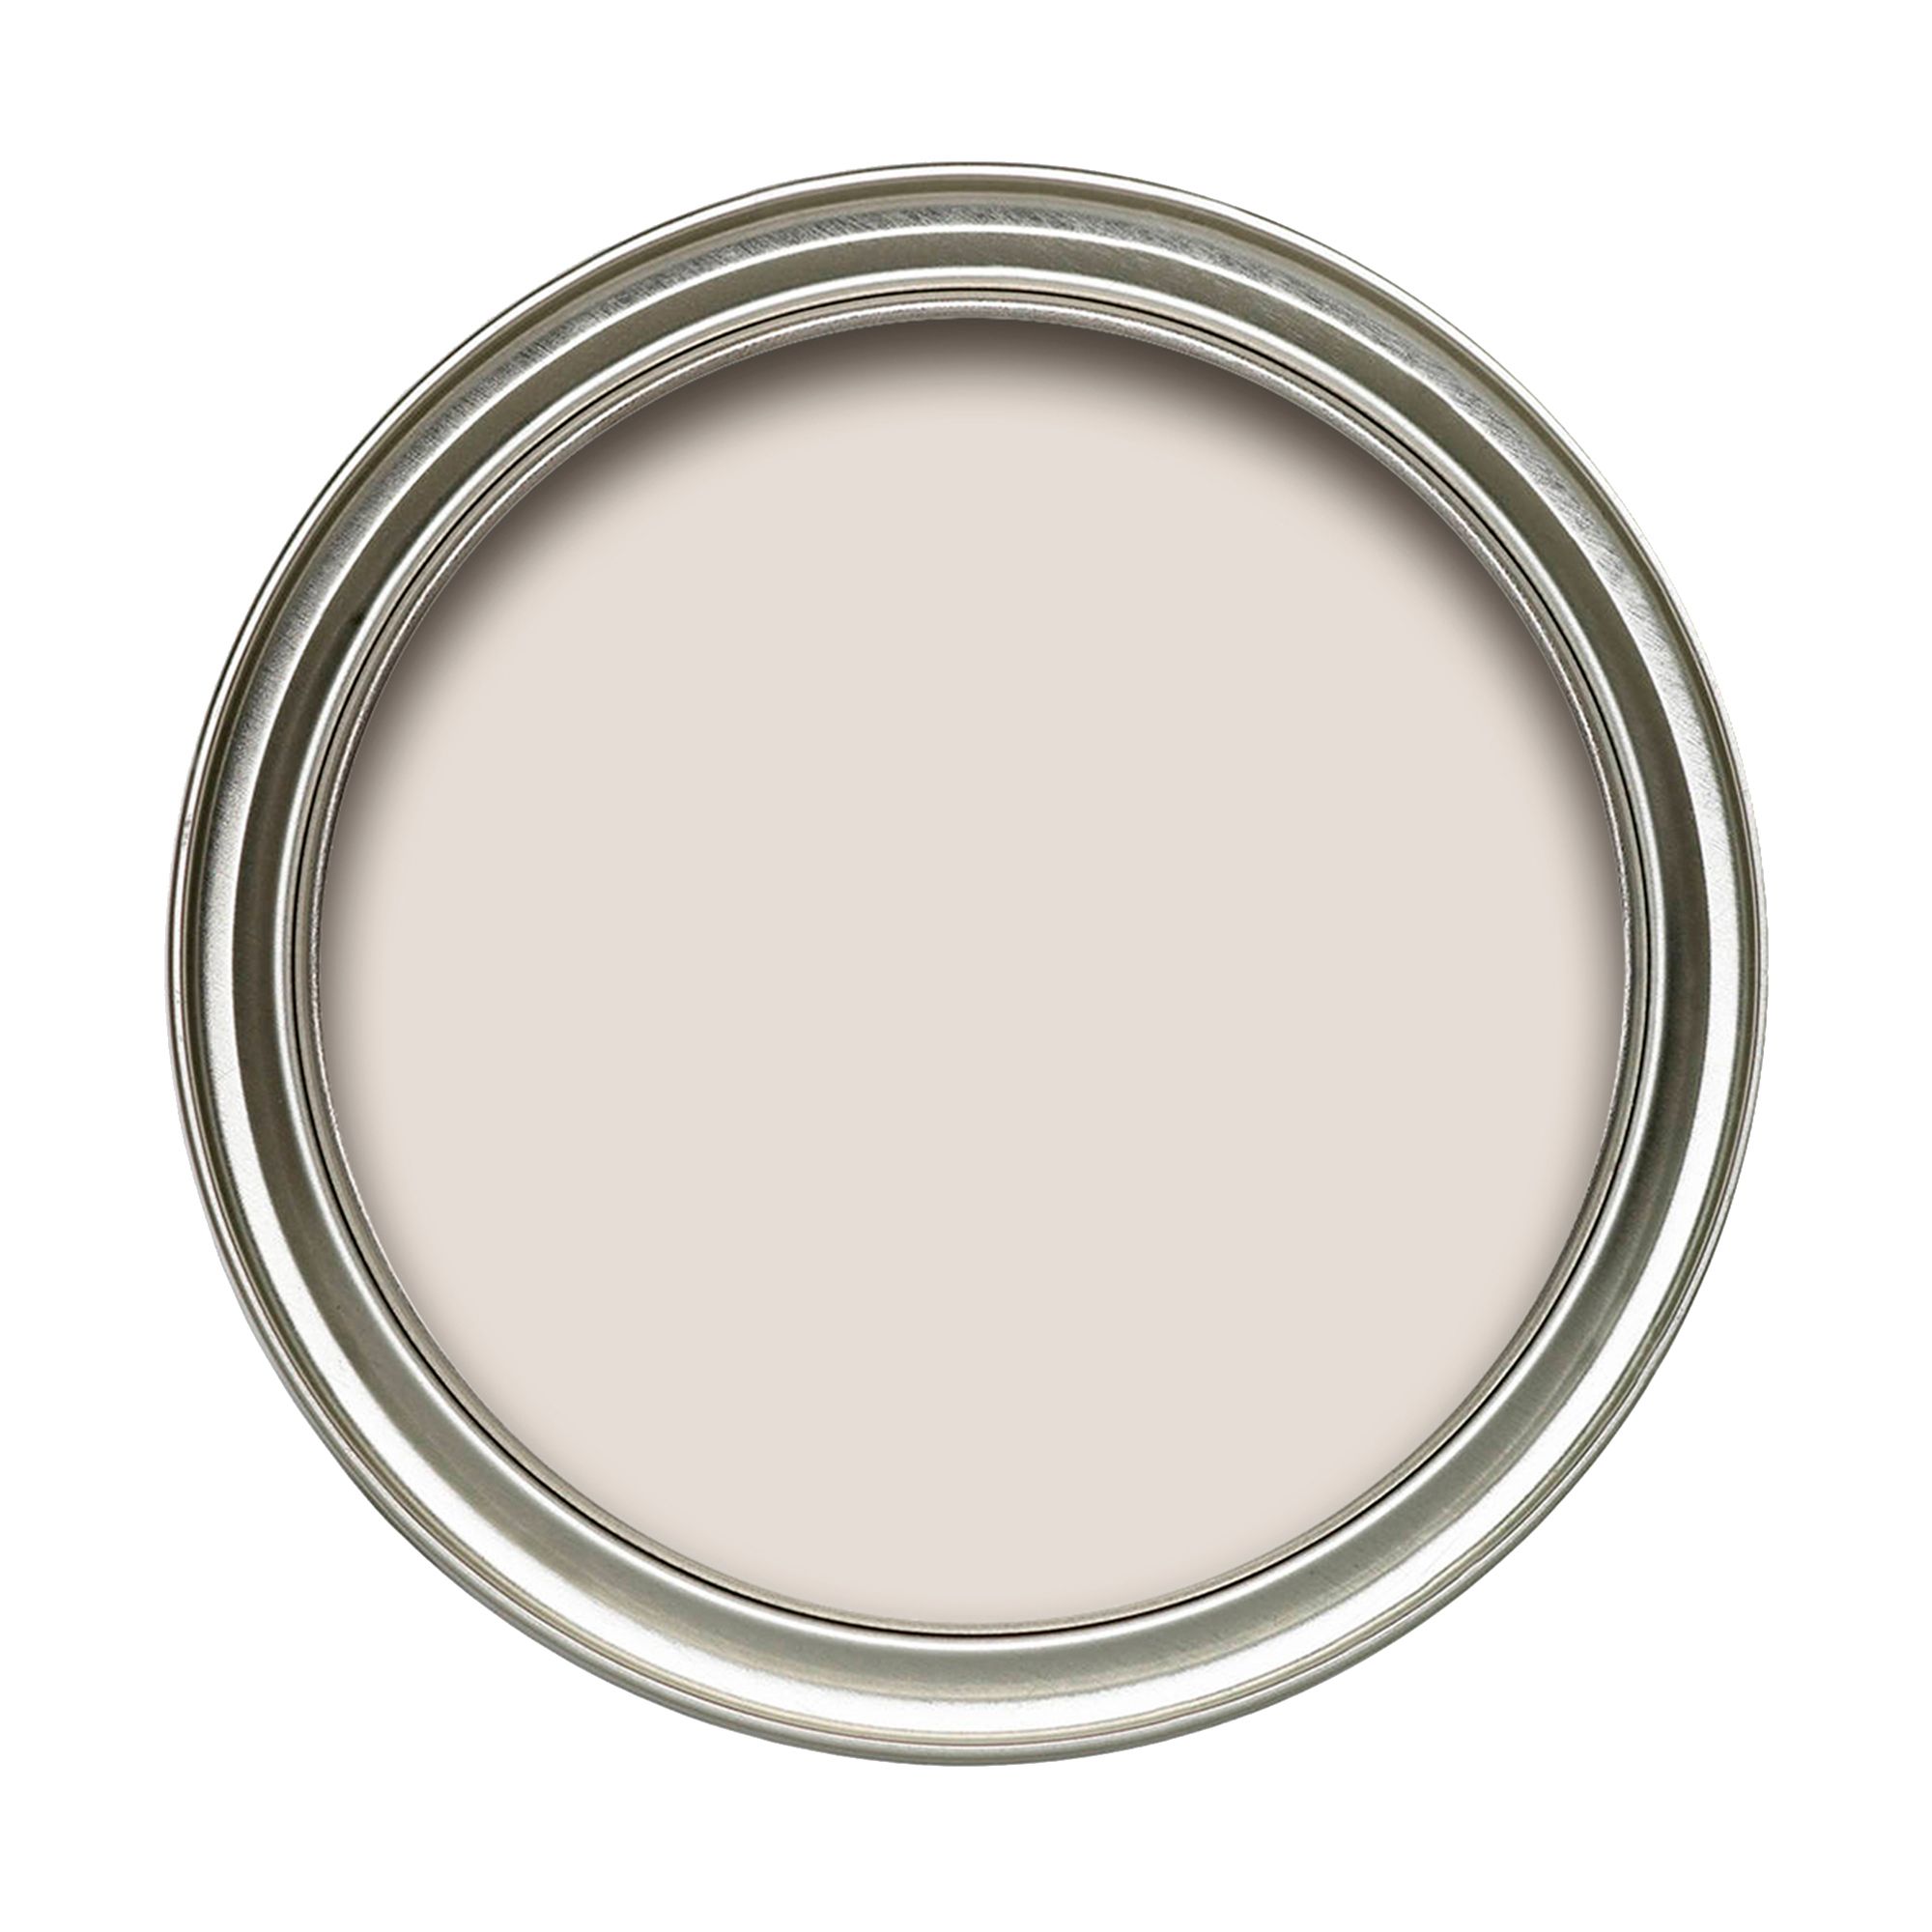 Dulux Tempting taupe Soft sheen Emulsion paint, 2.5L